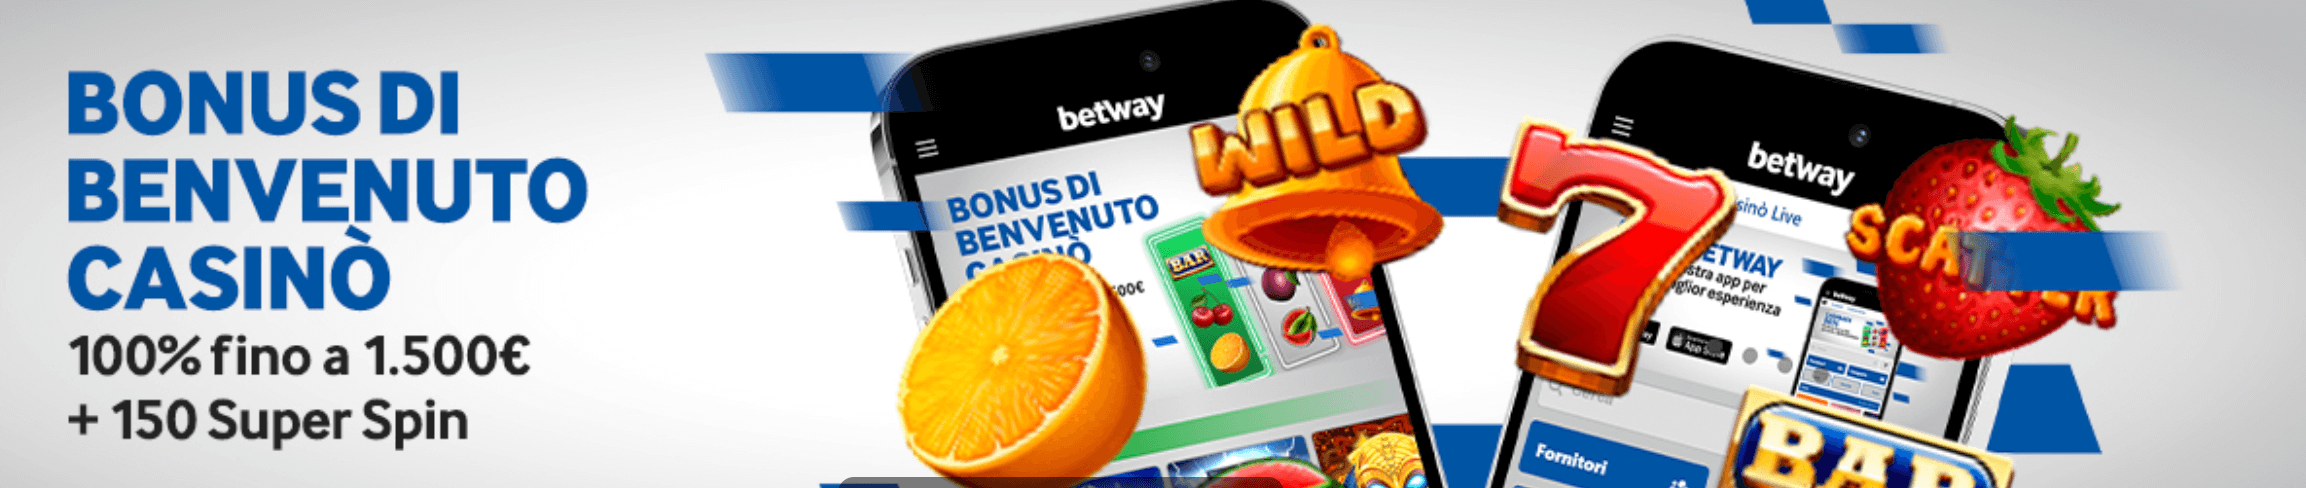 Betway Casino Bonus Benvenuto